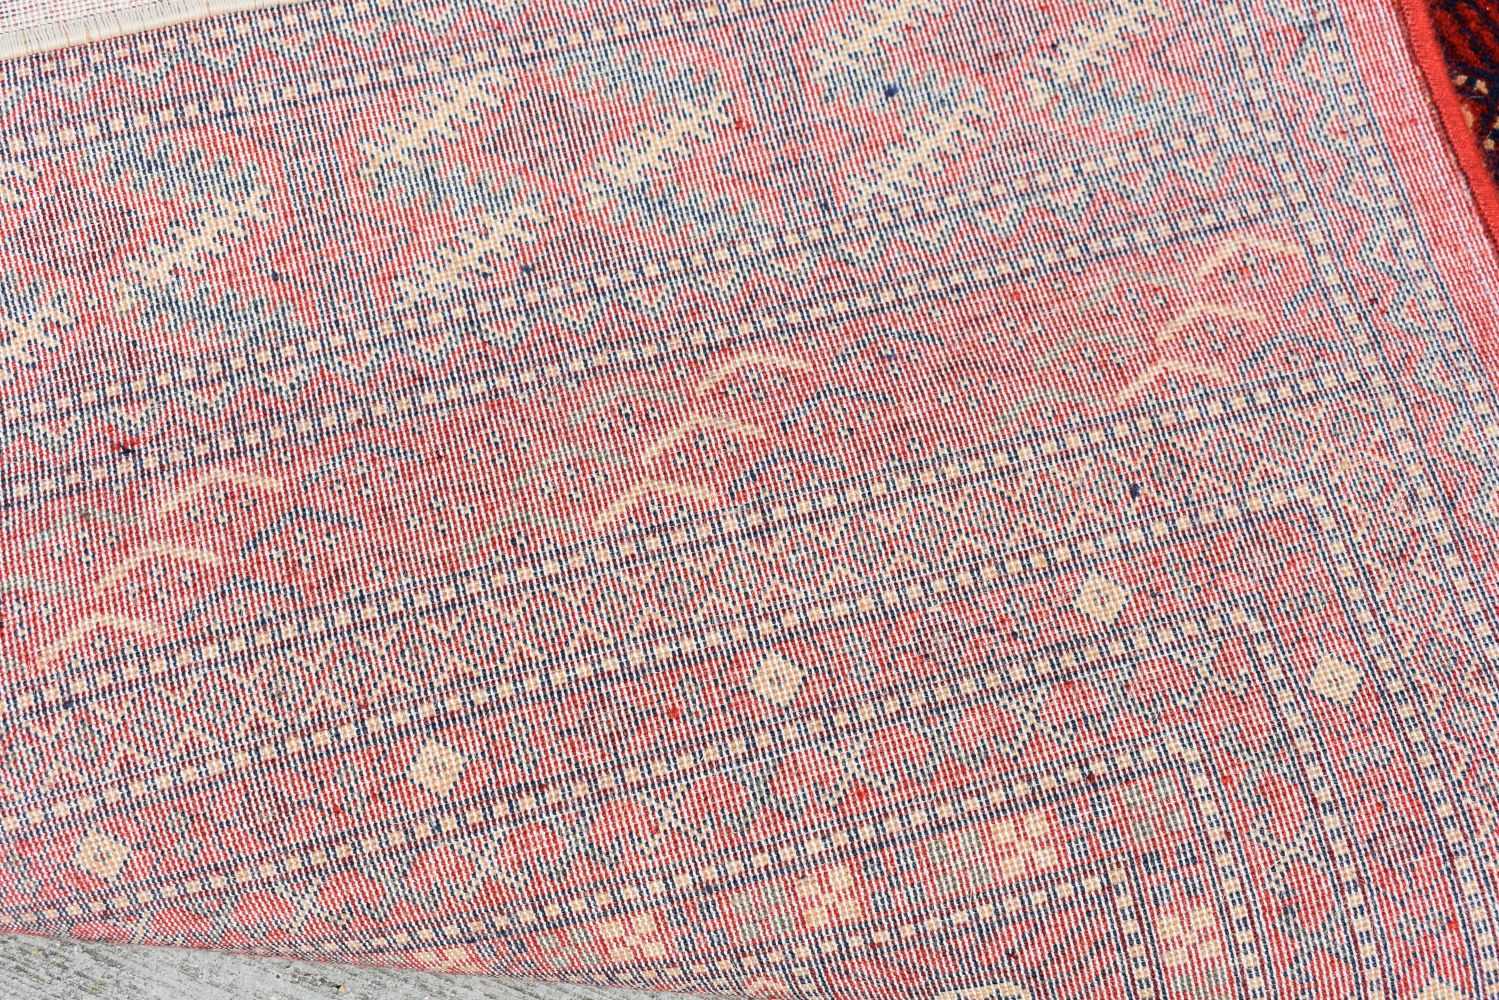 A Turkish Kirman rug 297 x 201 cm - Image 4 of 16